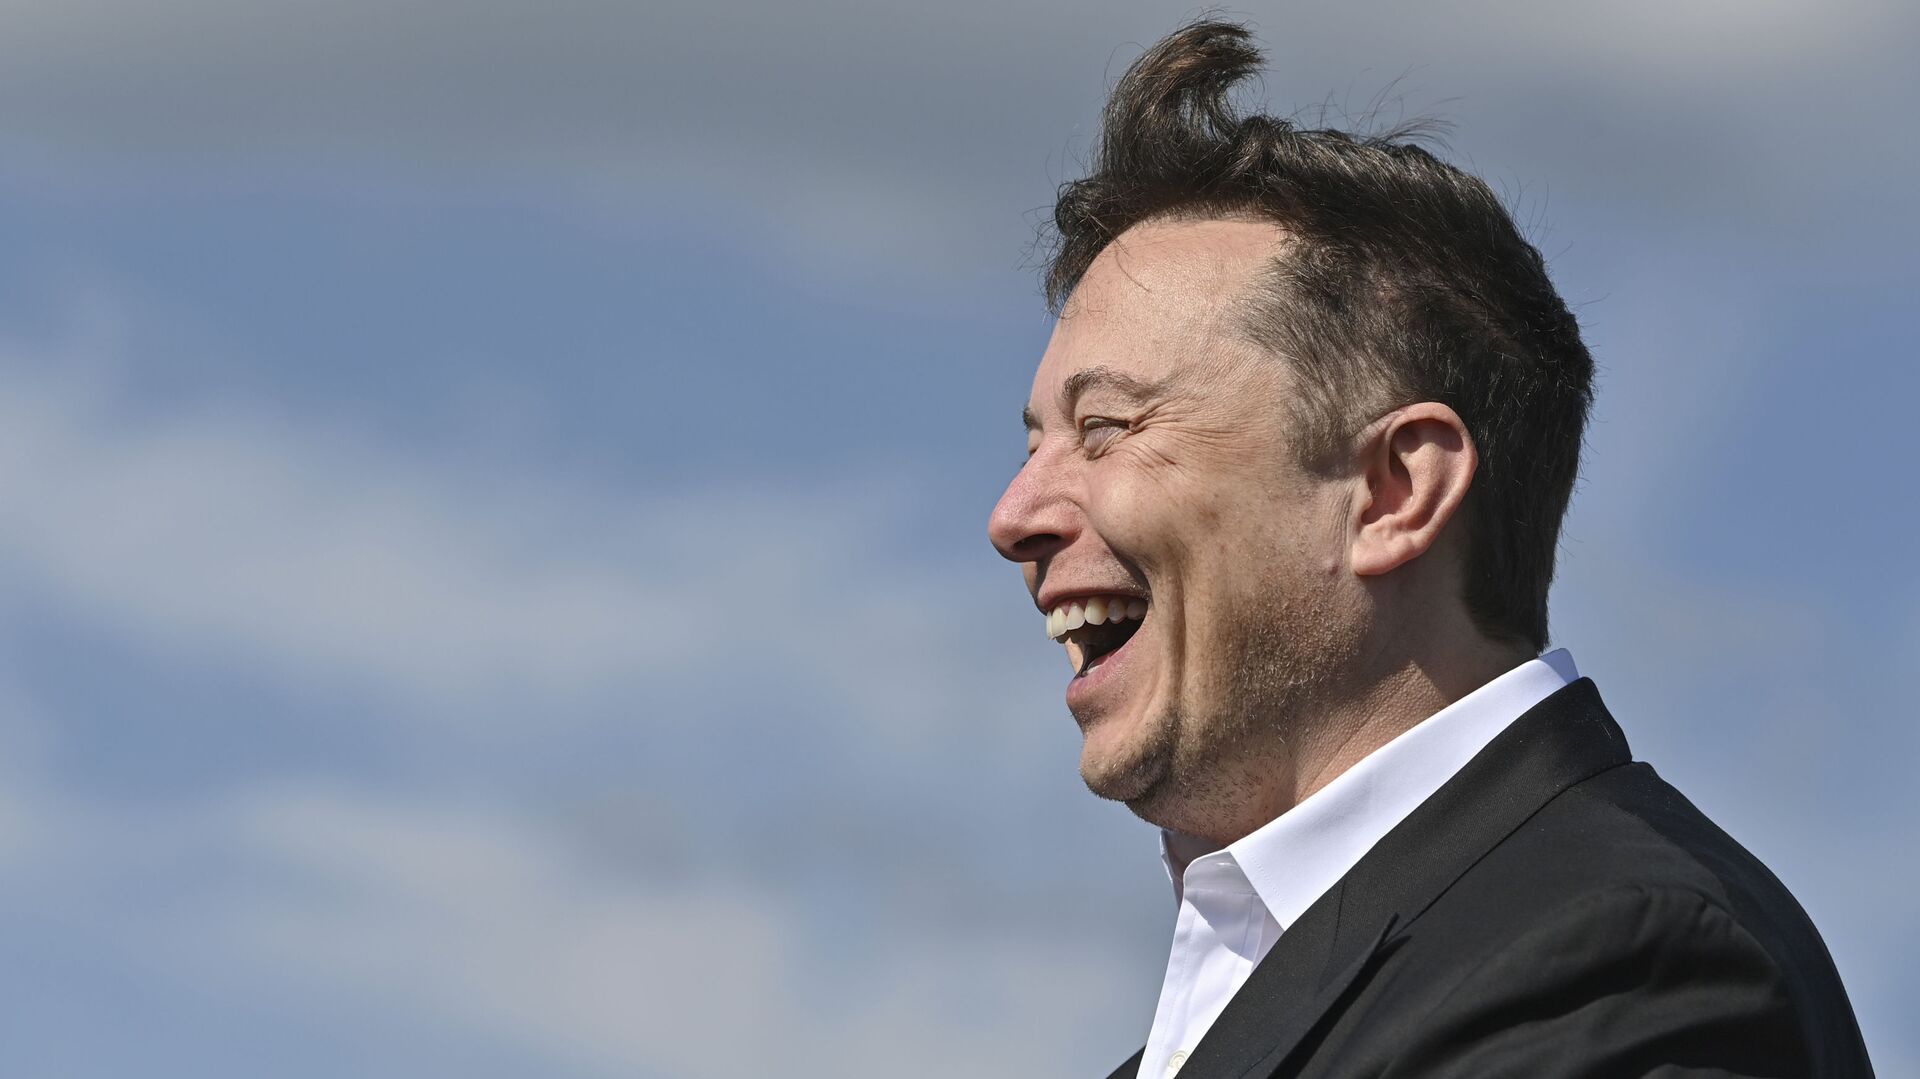 Doanh nhân công nghệ Elon Musk cười khi đến thăm công trường xây dựng Tesla Gigafactory ở Gruenheide gần Berlin, Đức, ngày 3 tháng 9 năm 2020. - Sputnik Việt Nam, 1920, 31.12.2022